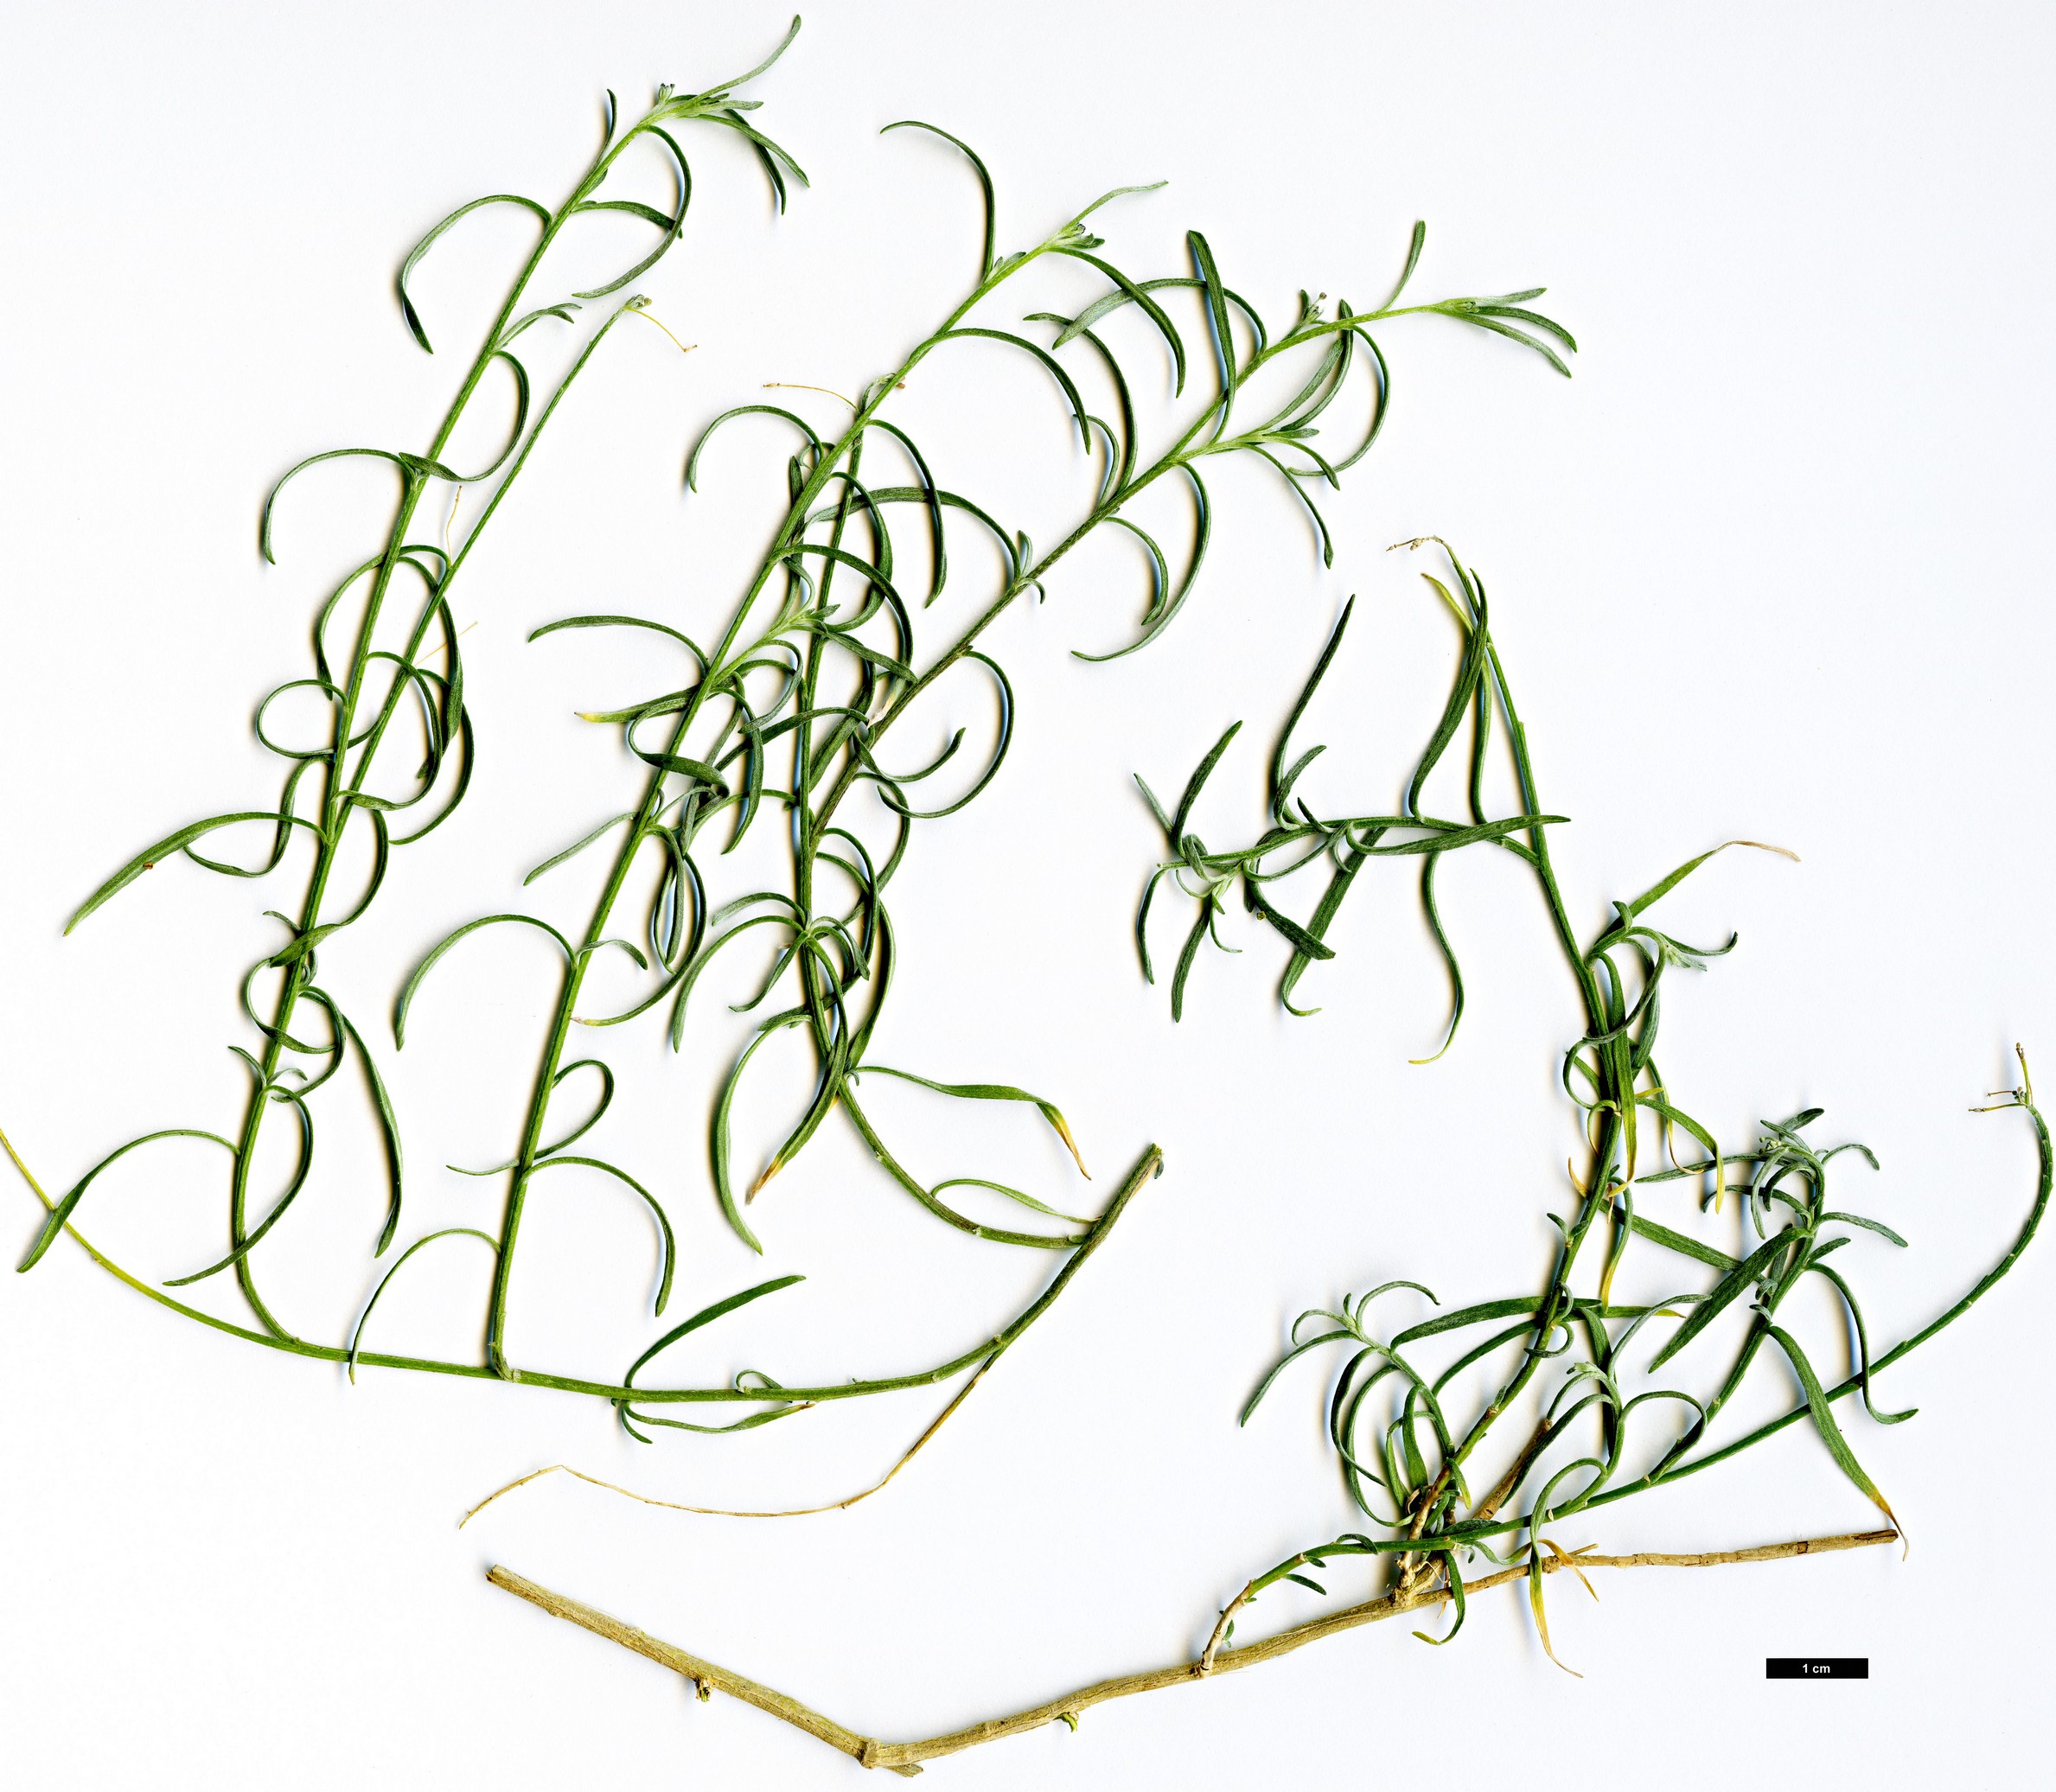 High resolution image: Family: Brassicaceae - Genus: Lobularia - Taxon: canariensis - SpeciesSub: subsp. intermedia